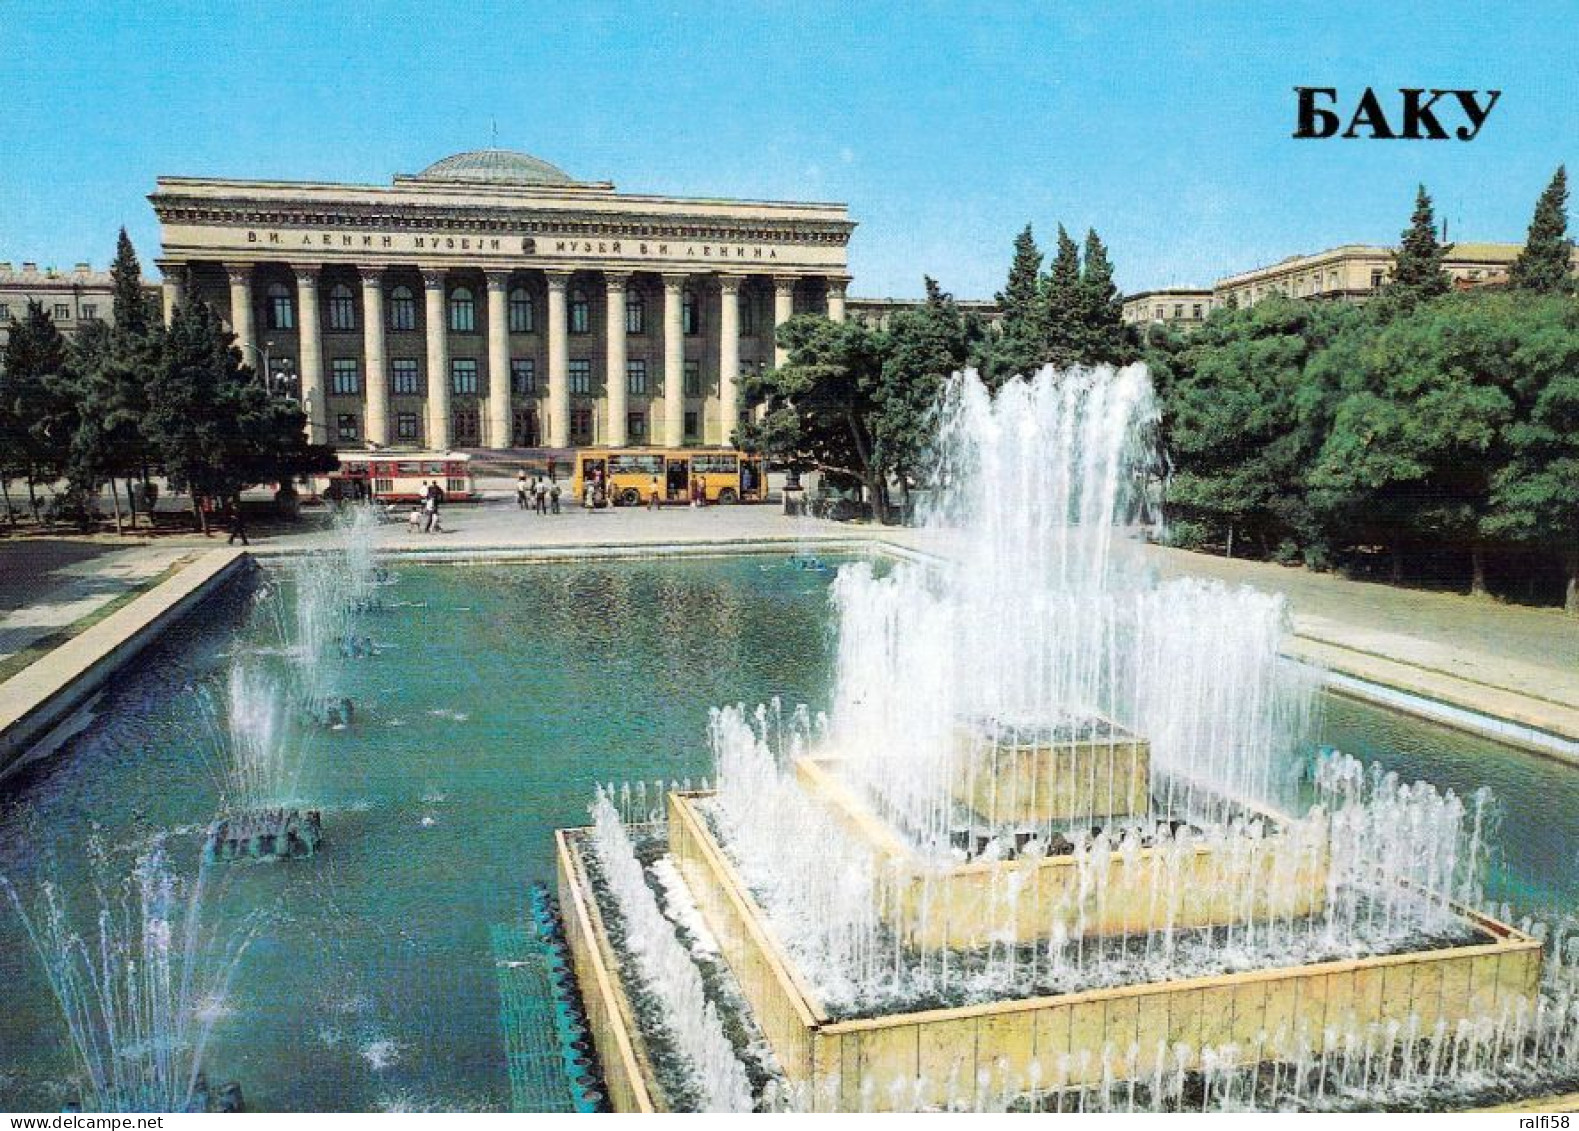 1 AK Aserbaidschan * Das Lenin Museum In Der Hauptstadt Baku - Karte Aus Der Zeit Der Sowjetunion * - Azerbaïjan